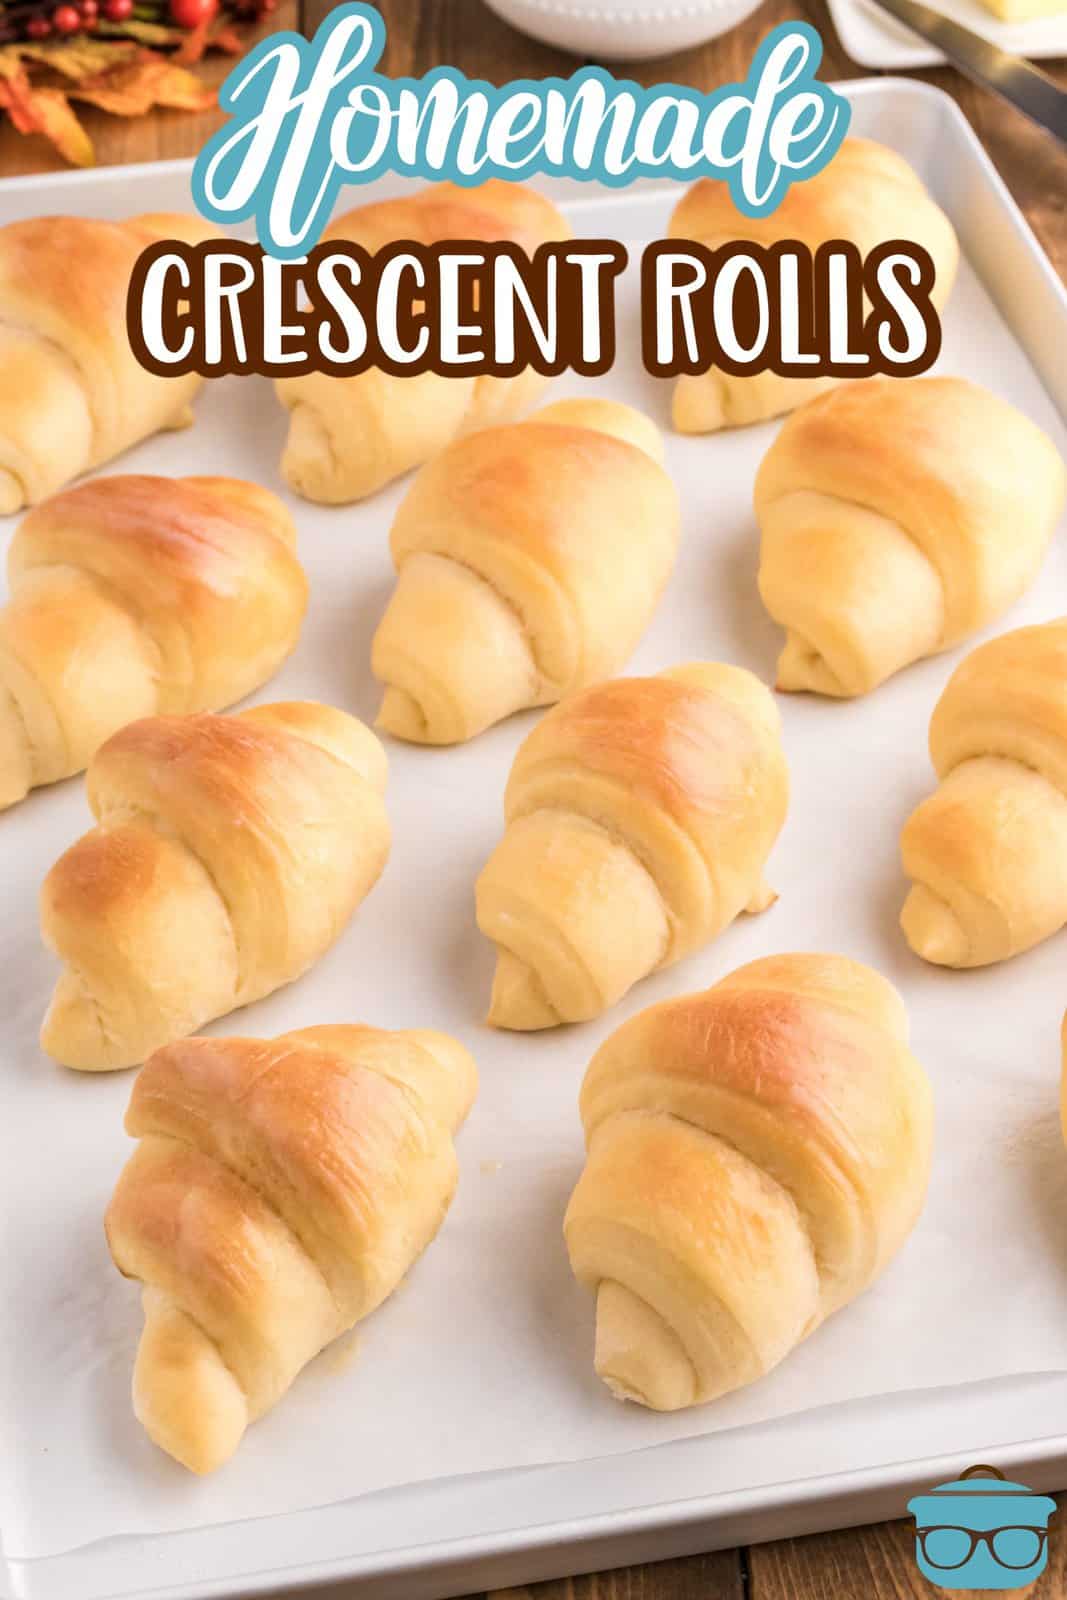 Pinterest image of baked Homemade Crescent Rolls on baking sheet.